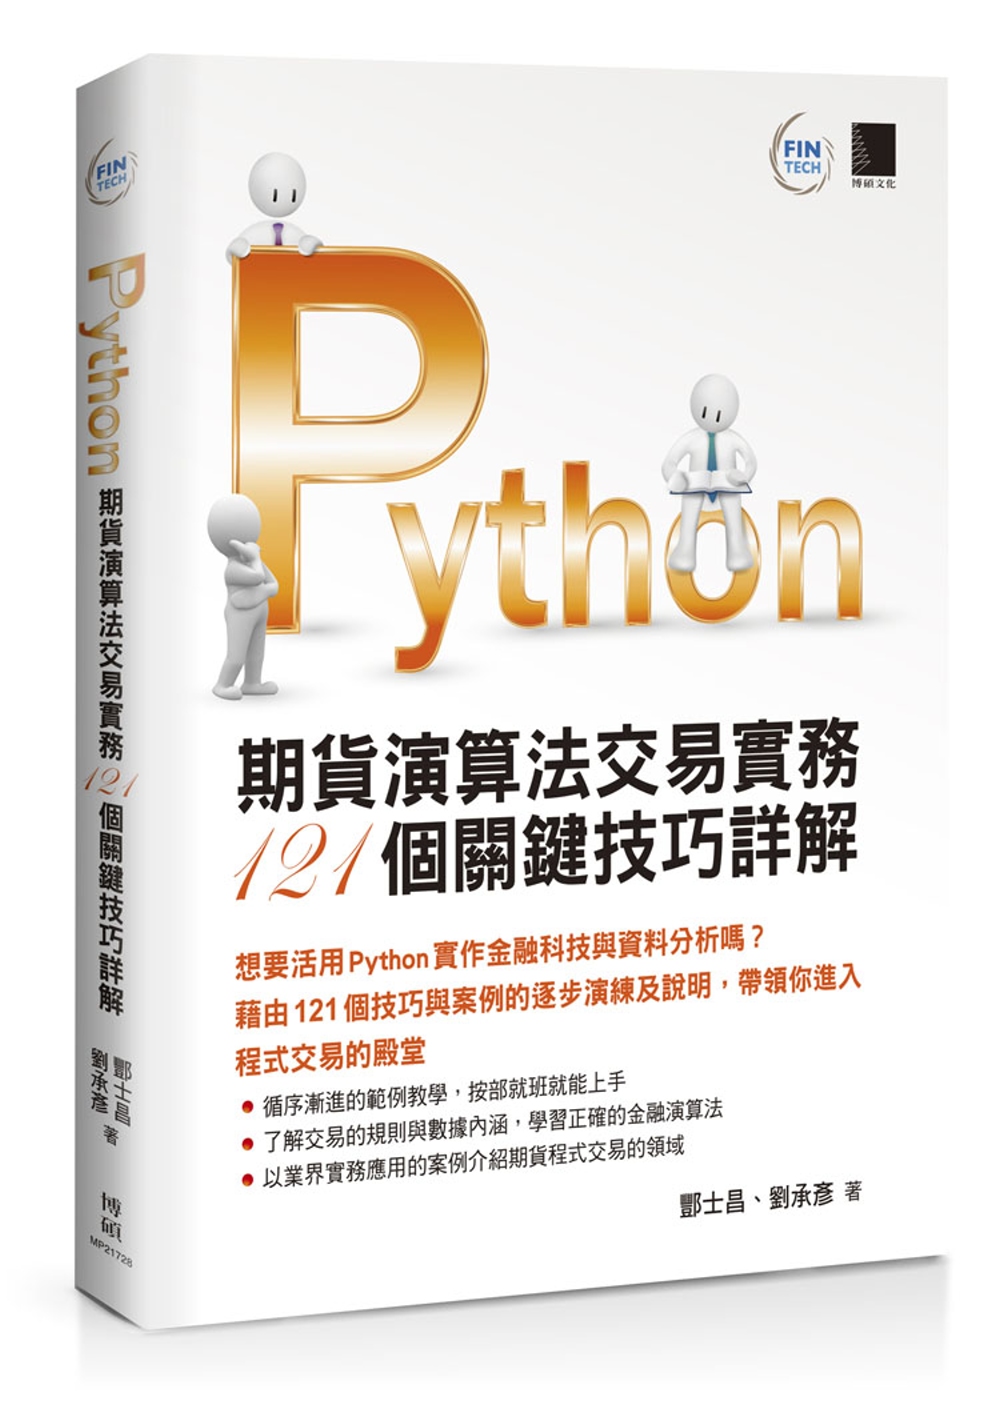 Python：期貨演算法交易實務121個關鍵技巧詳解